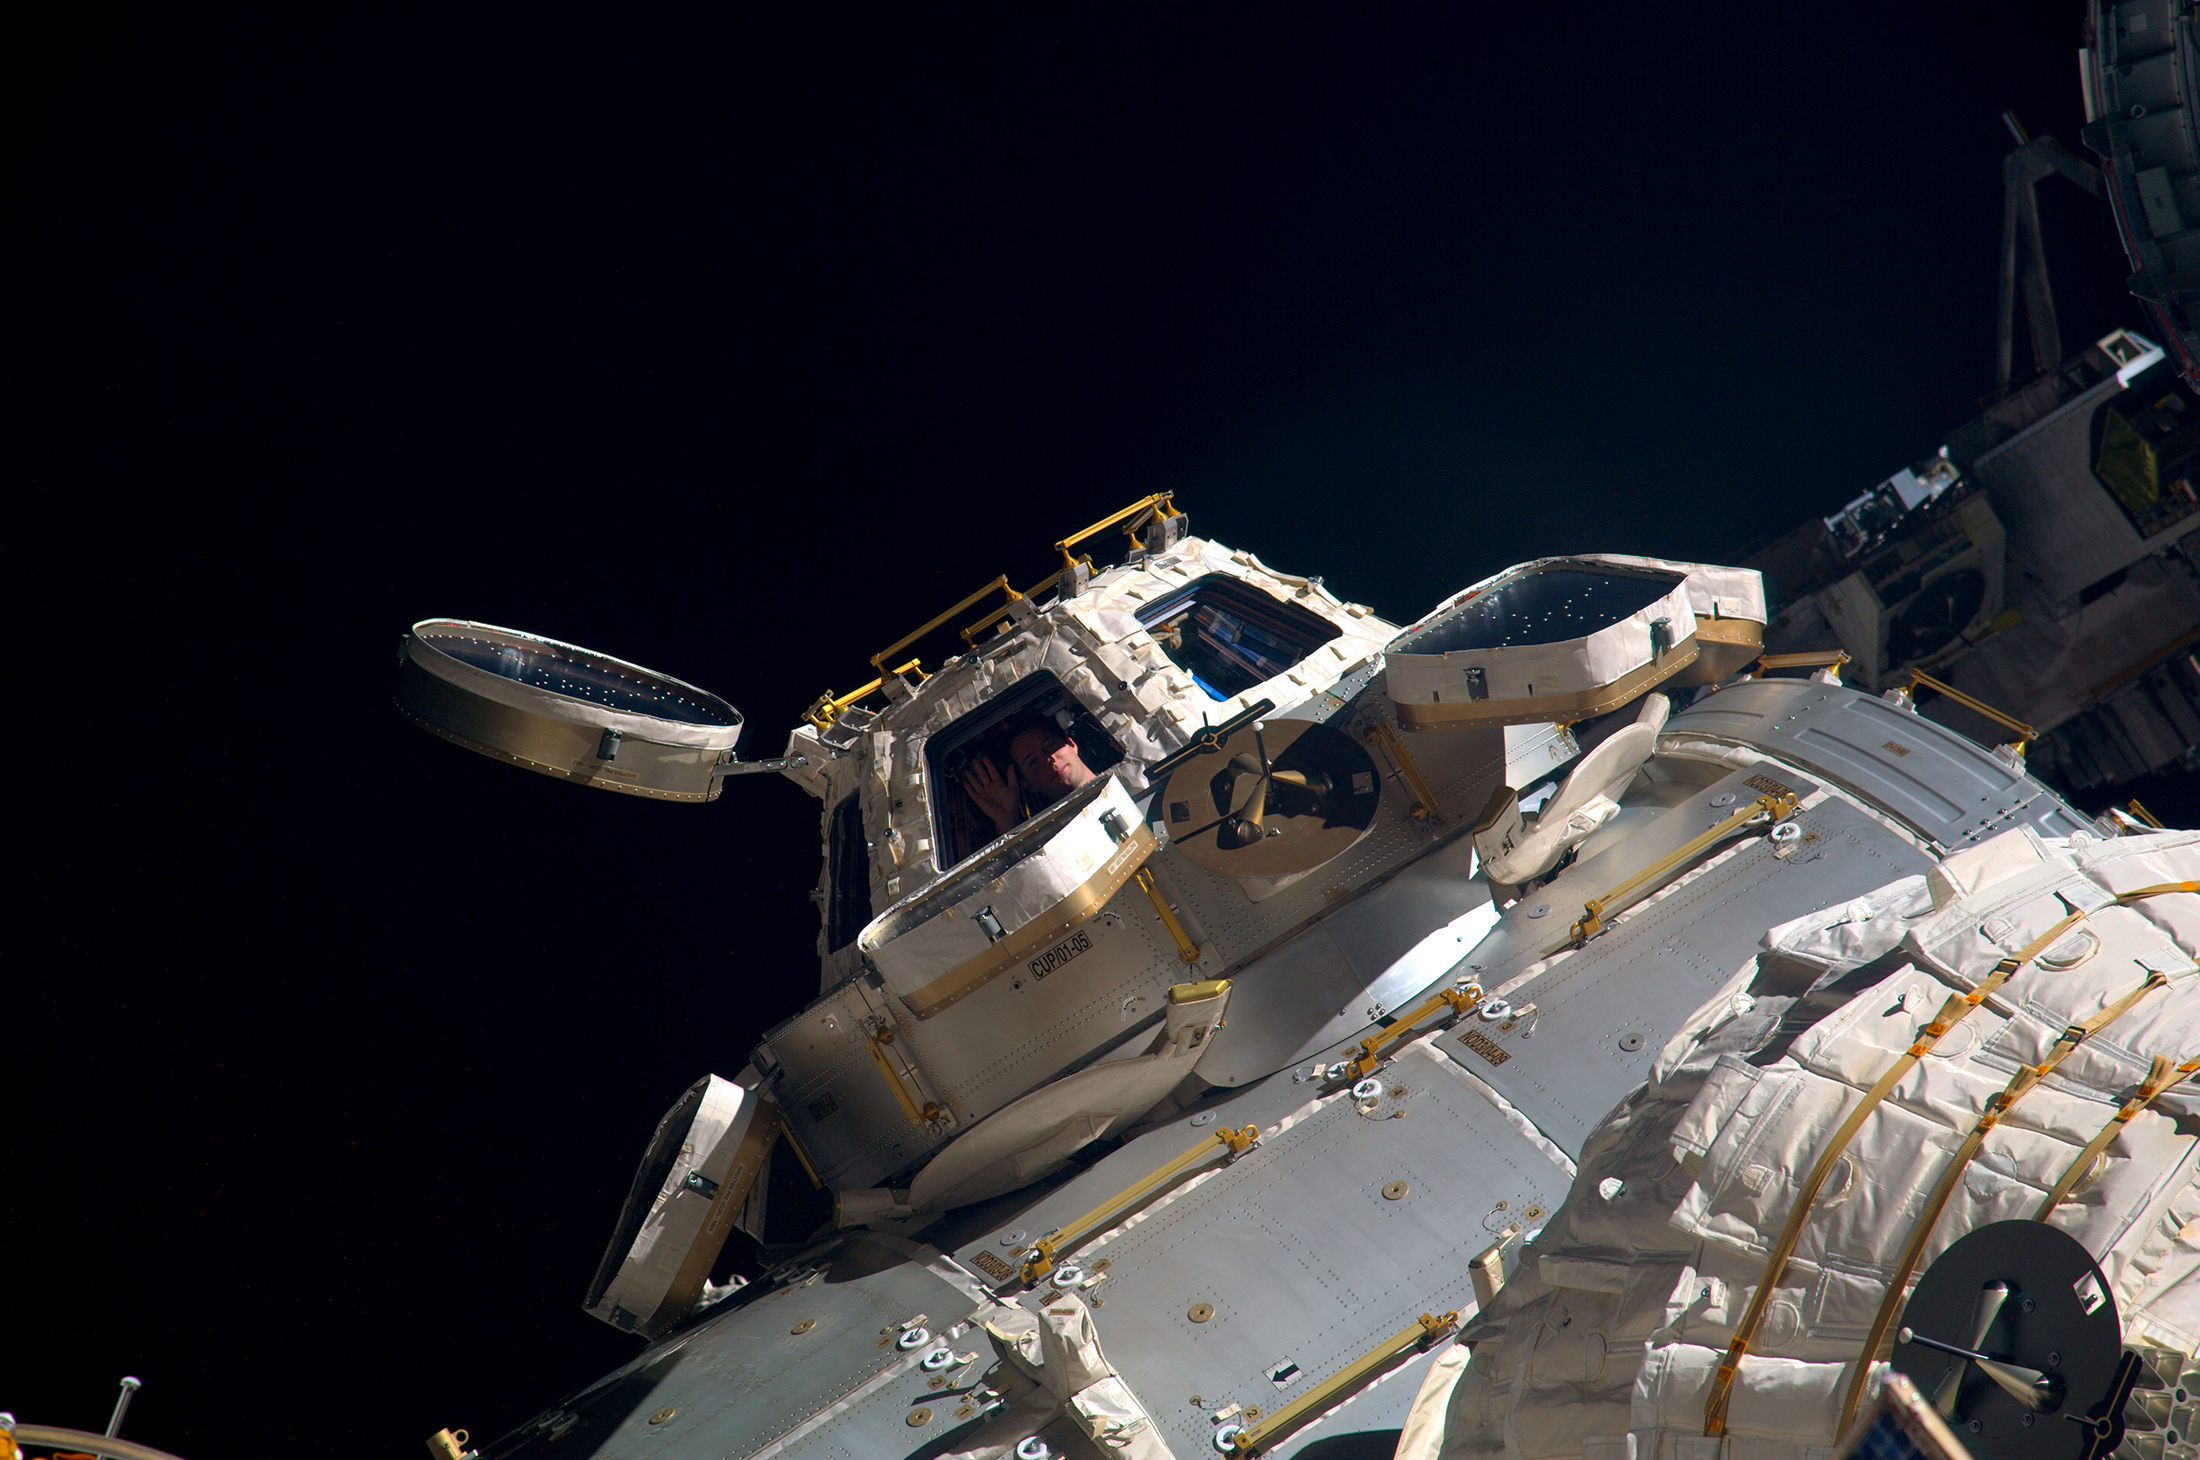 L'astronaute européen Thomas Pesquet à l'intérieur de la coupole d'où il peut piloter et contrôler le bras robotique de la Station spatiale internationale (mars 2017). © ESA, Nasa